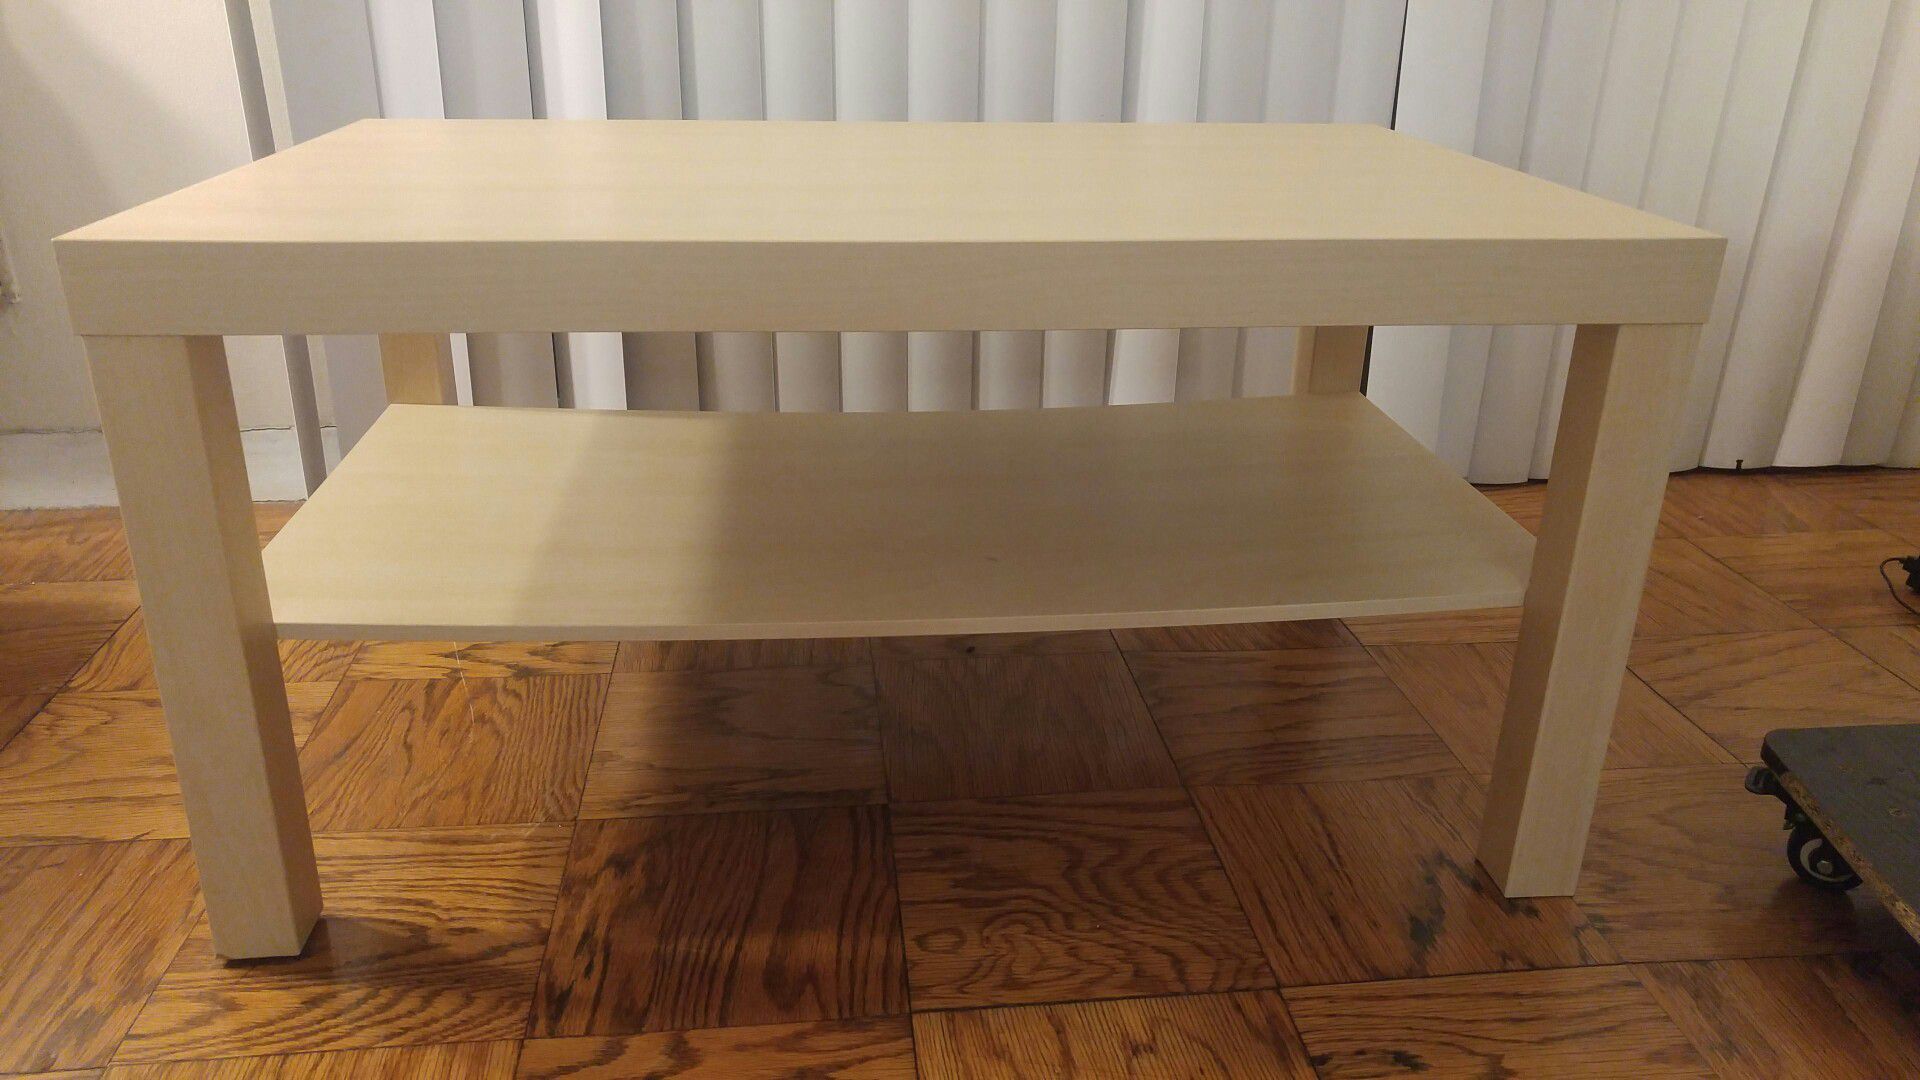 Ikea Lack coffee table